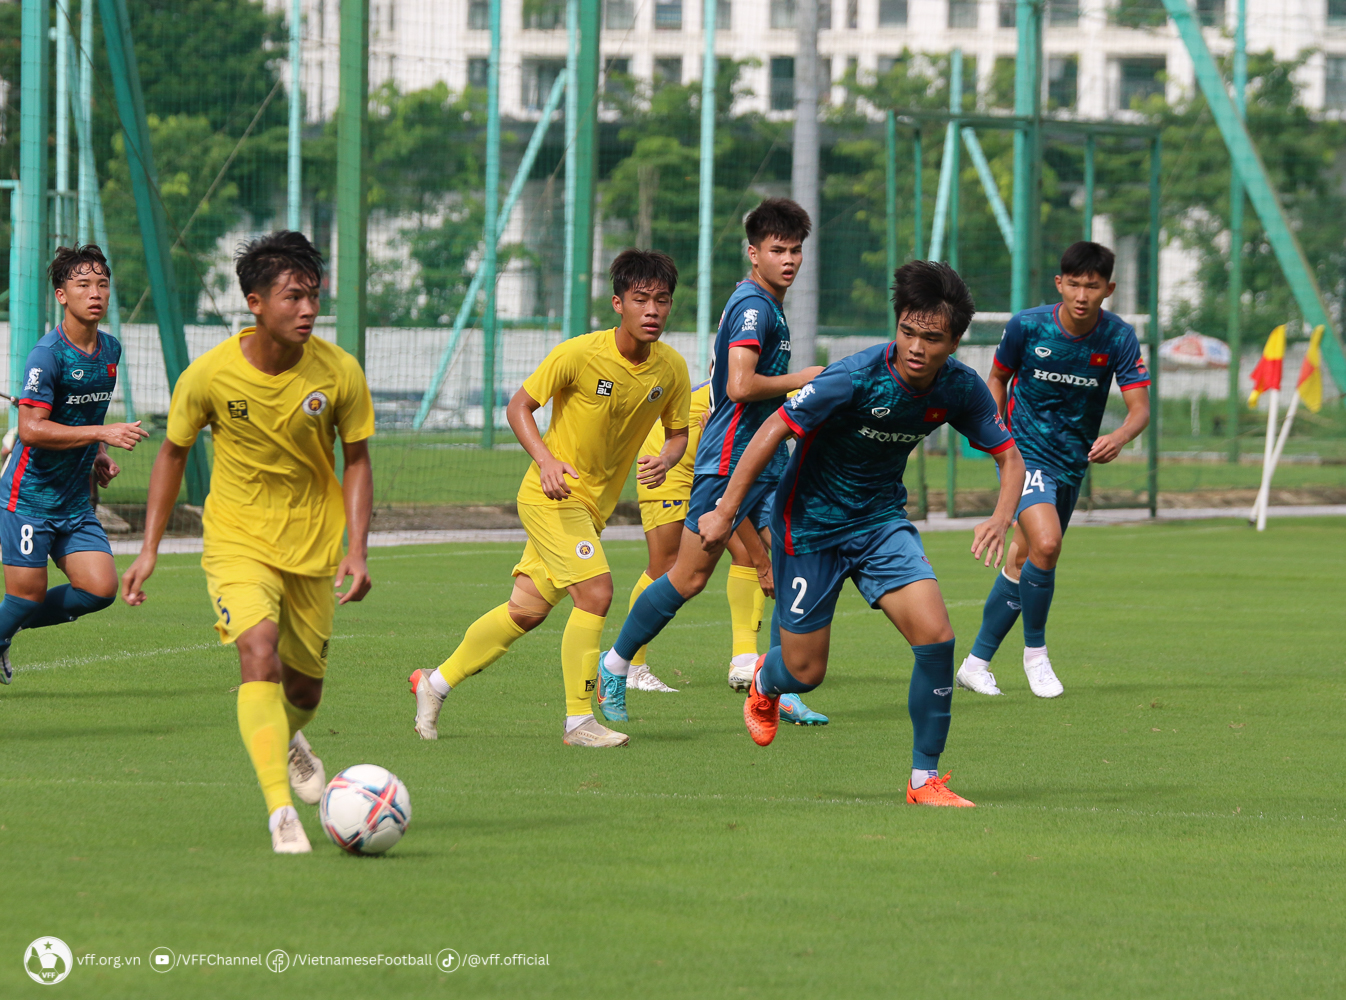 Thiếu quân ‘xịn’, U23 Việt Nam vẫn đấu tập để kịp lên đường dự giải Đông Nam Á  - Ảnh 3.